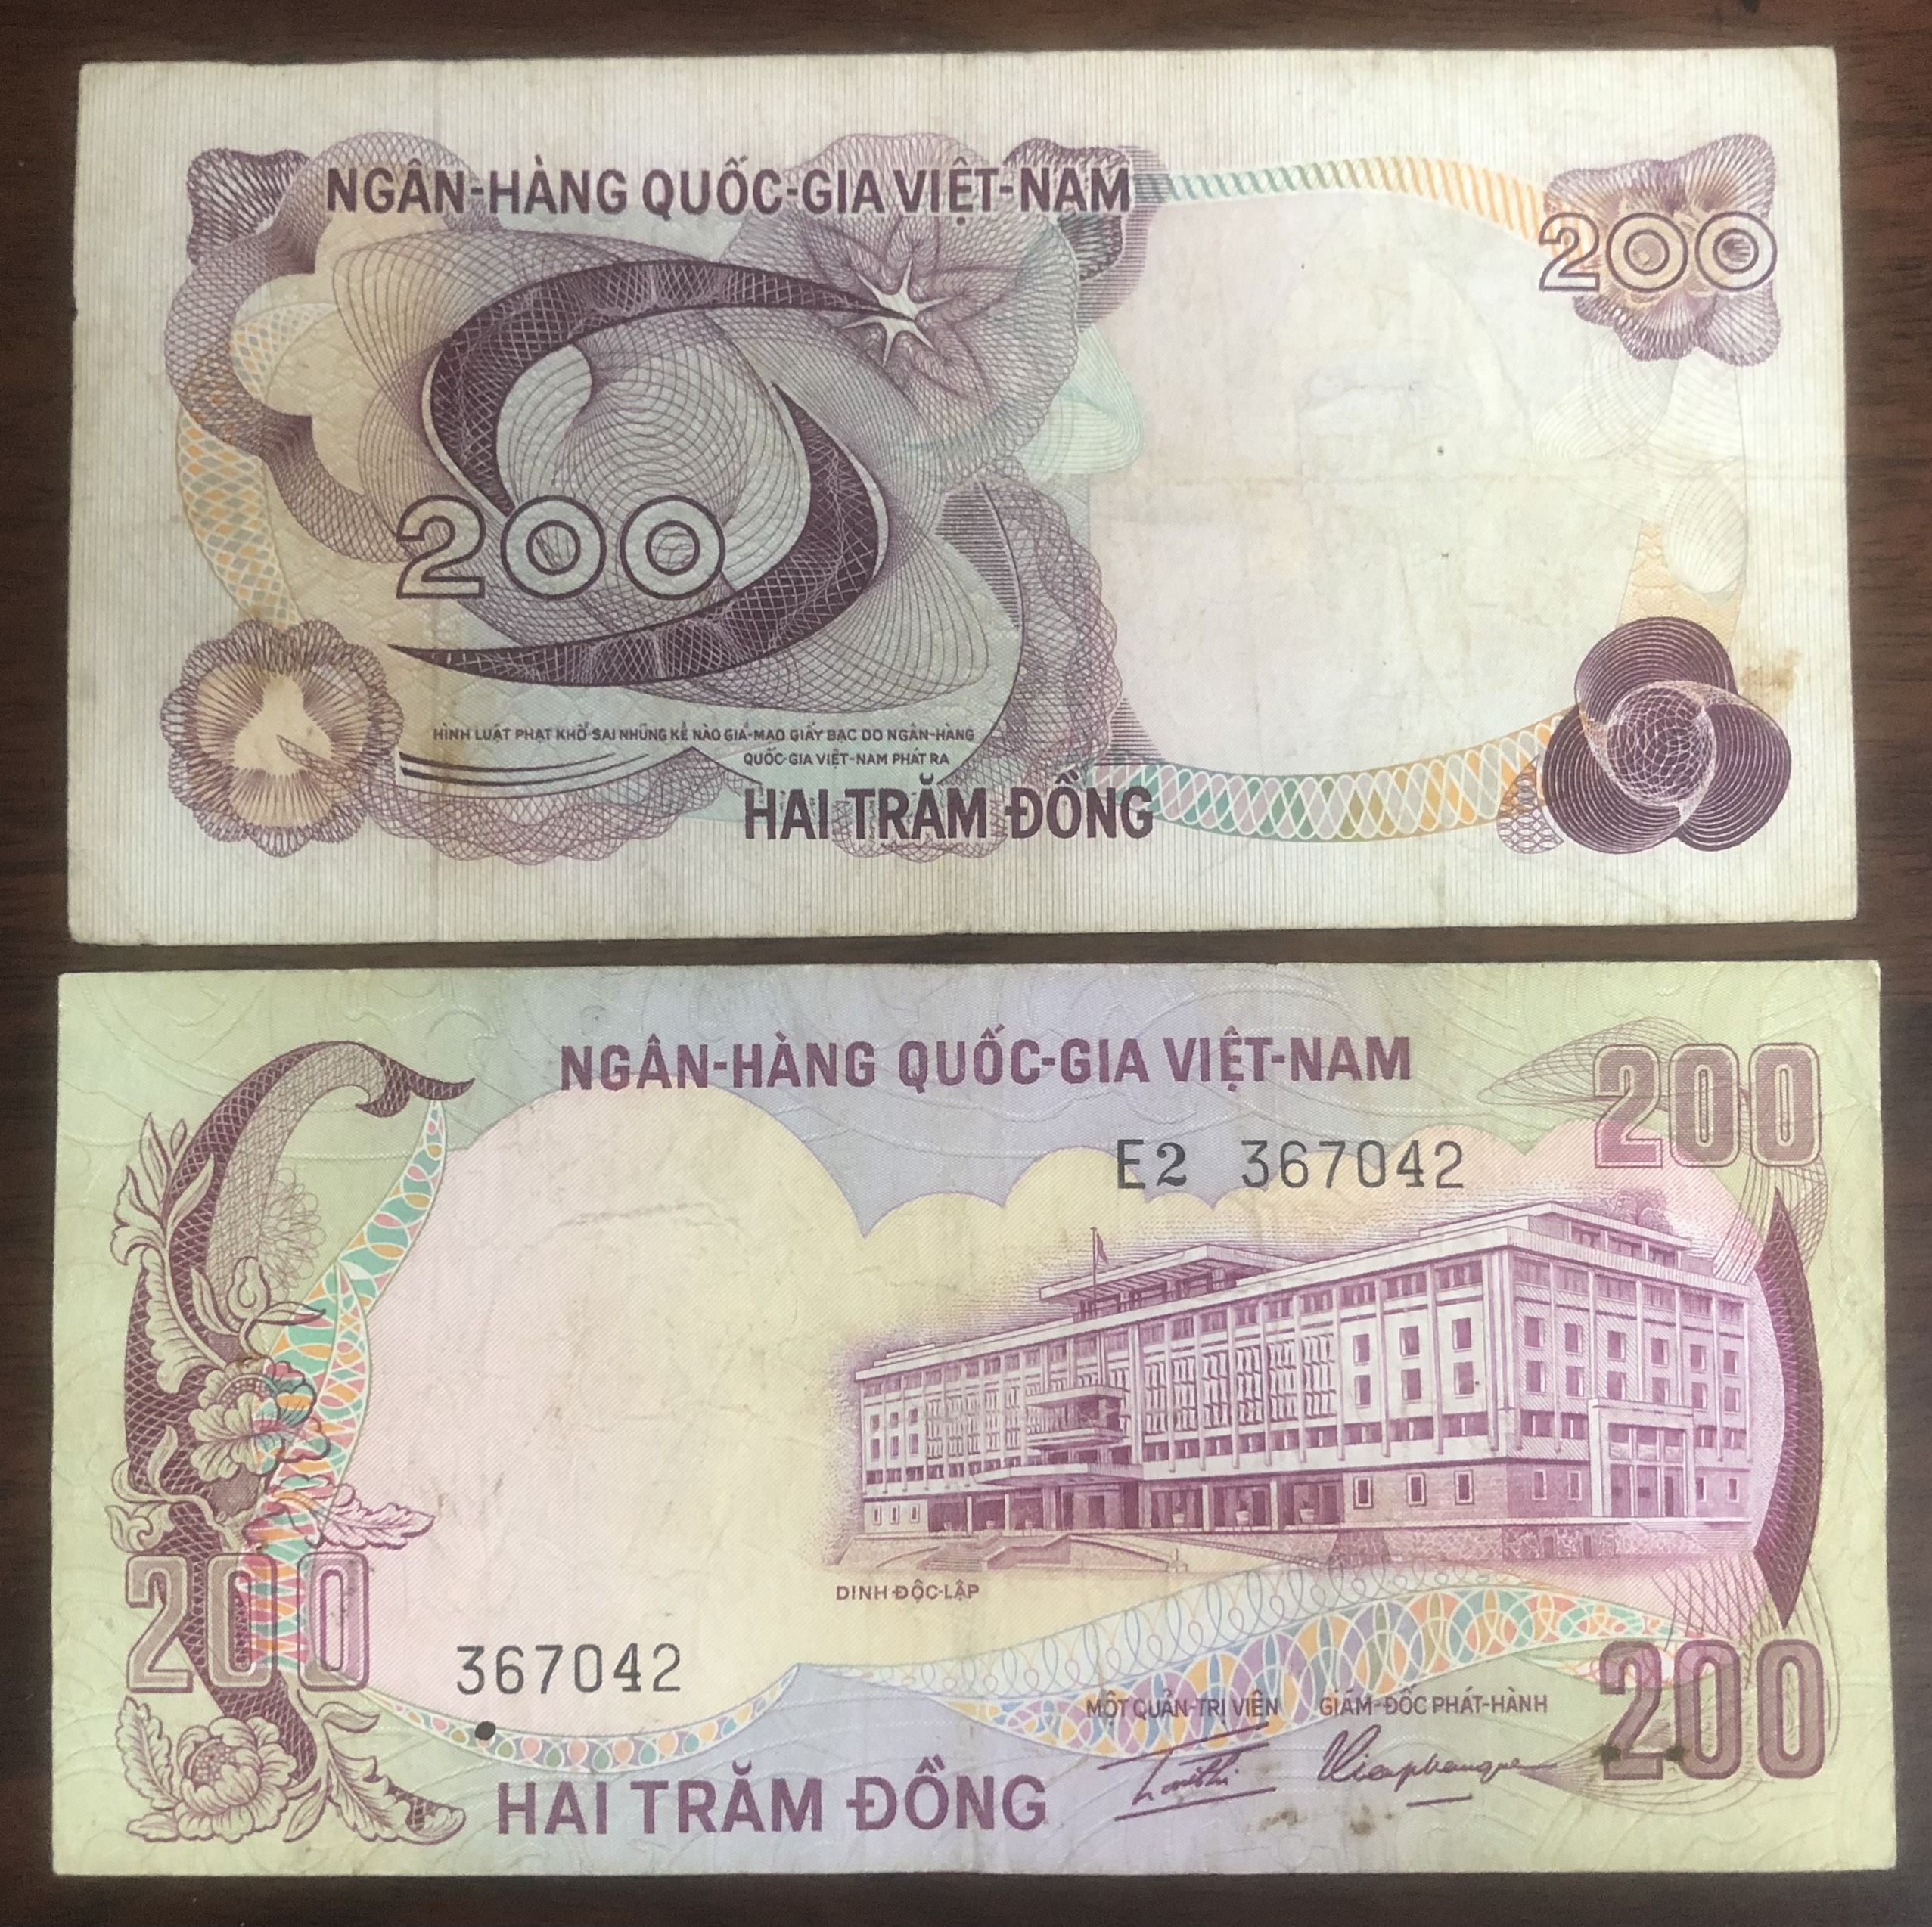 Bộ 2 tờ tiền Việt Nam mệnh giá 200 đồng phát hành khác giai đoạn